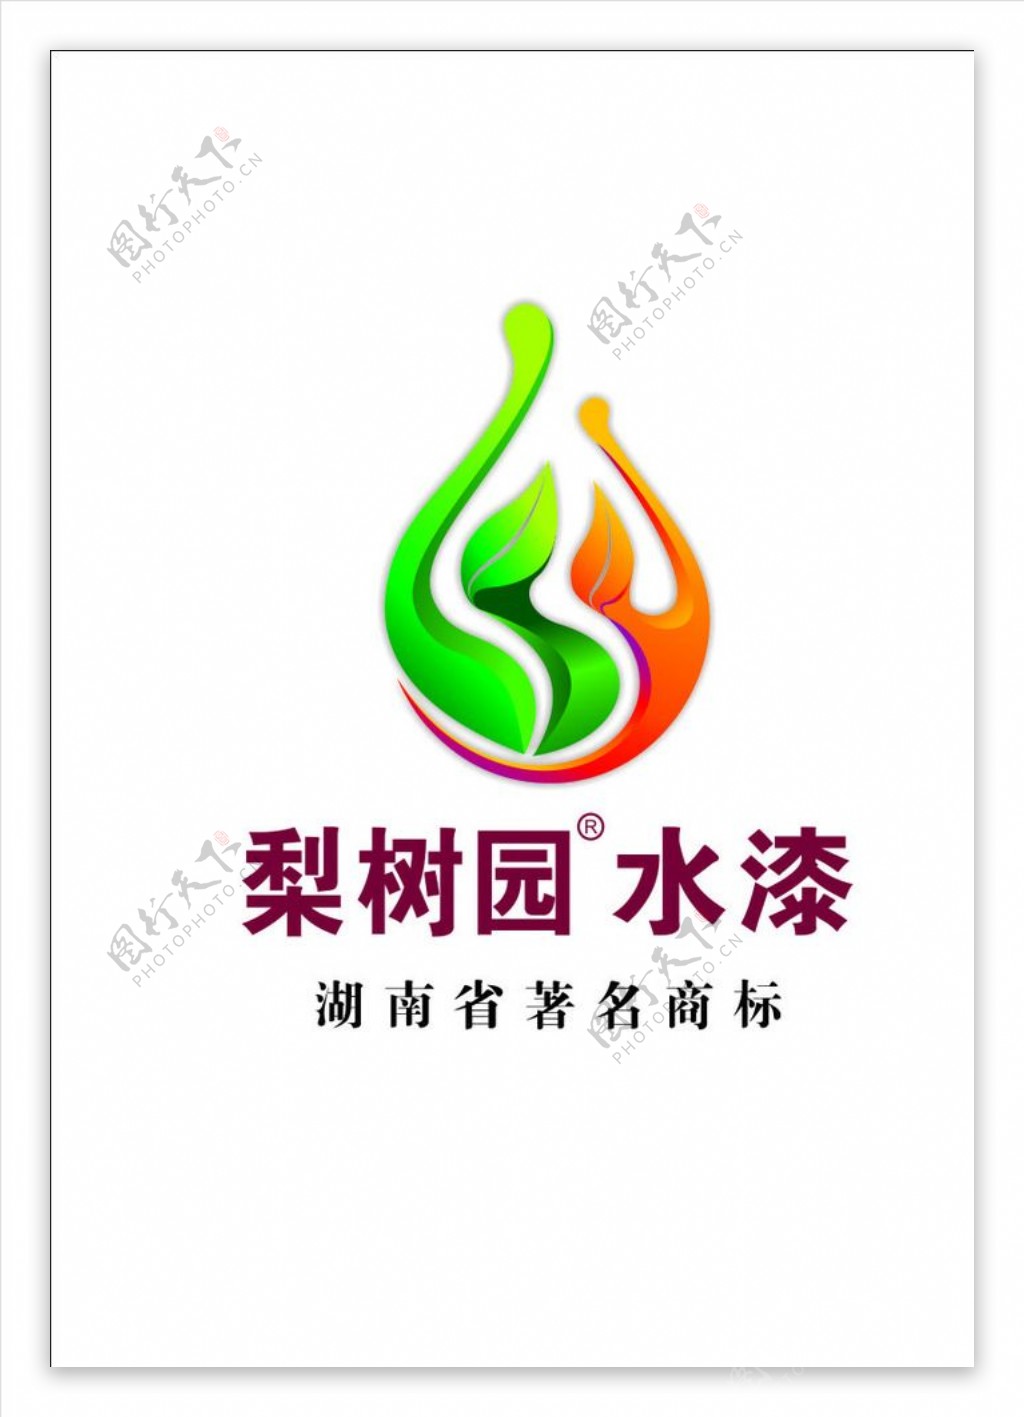 梨树园标志logo湖南水漆